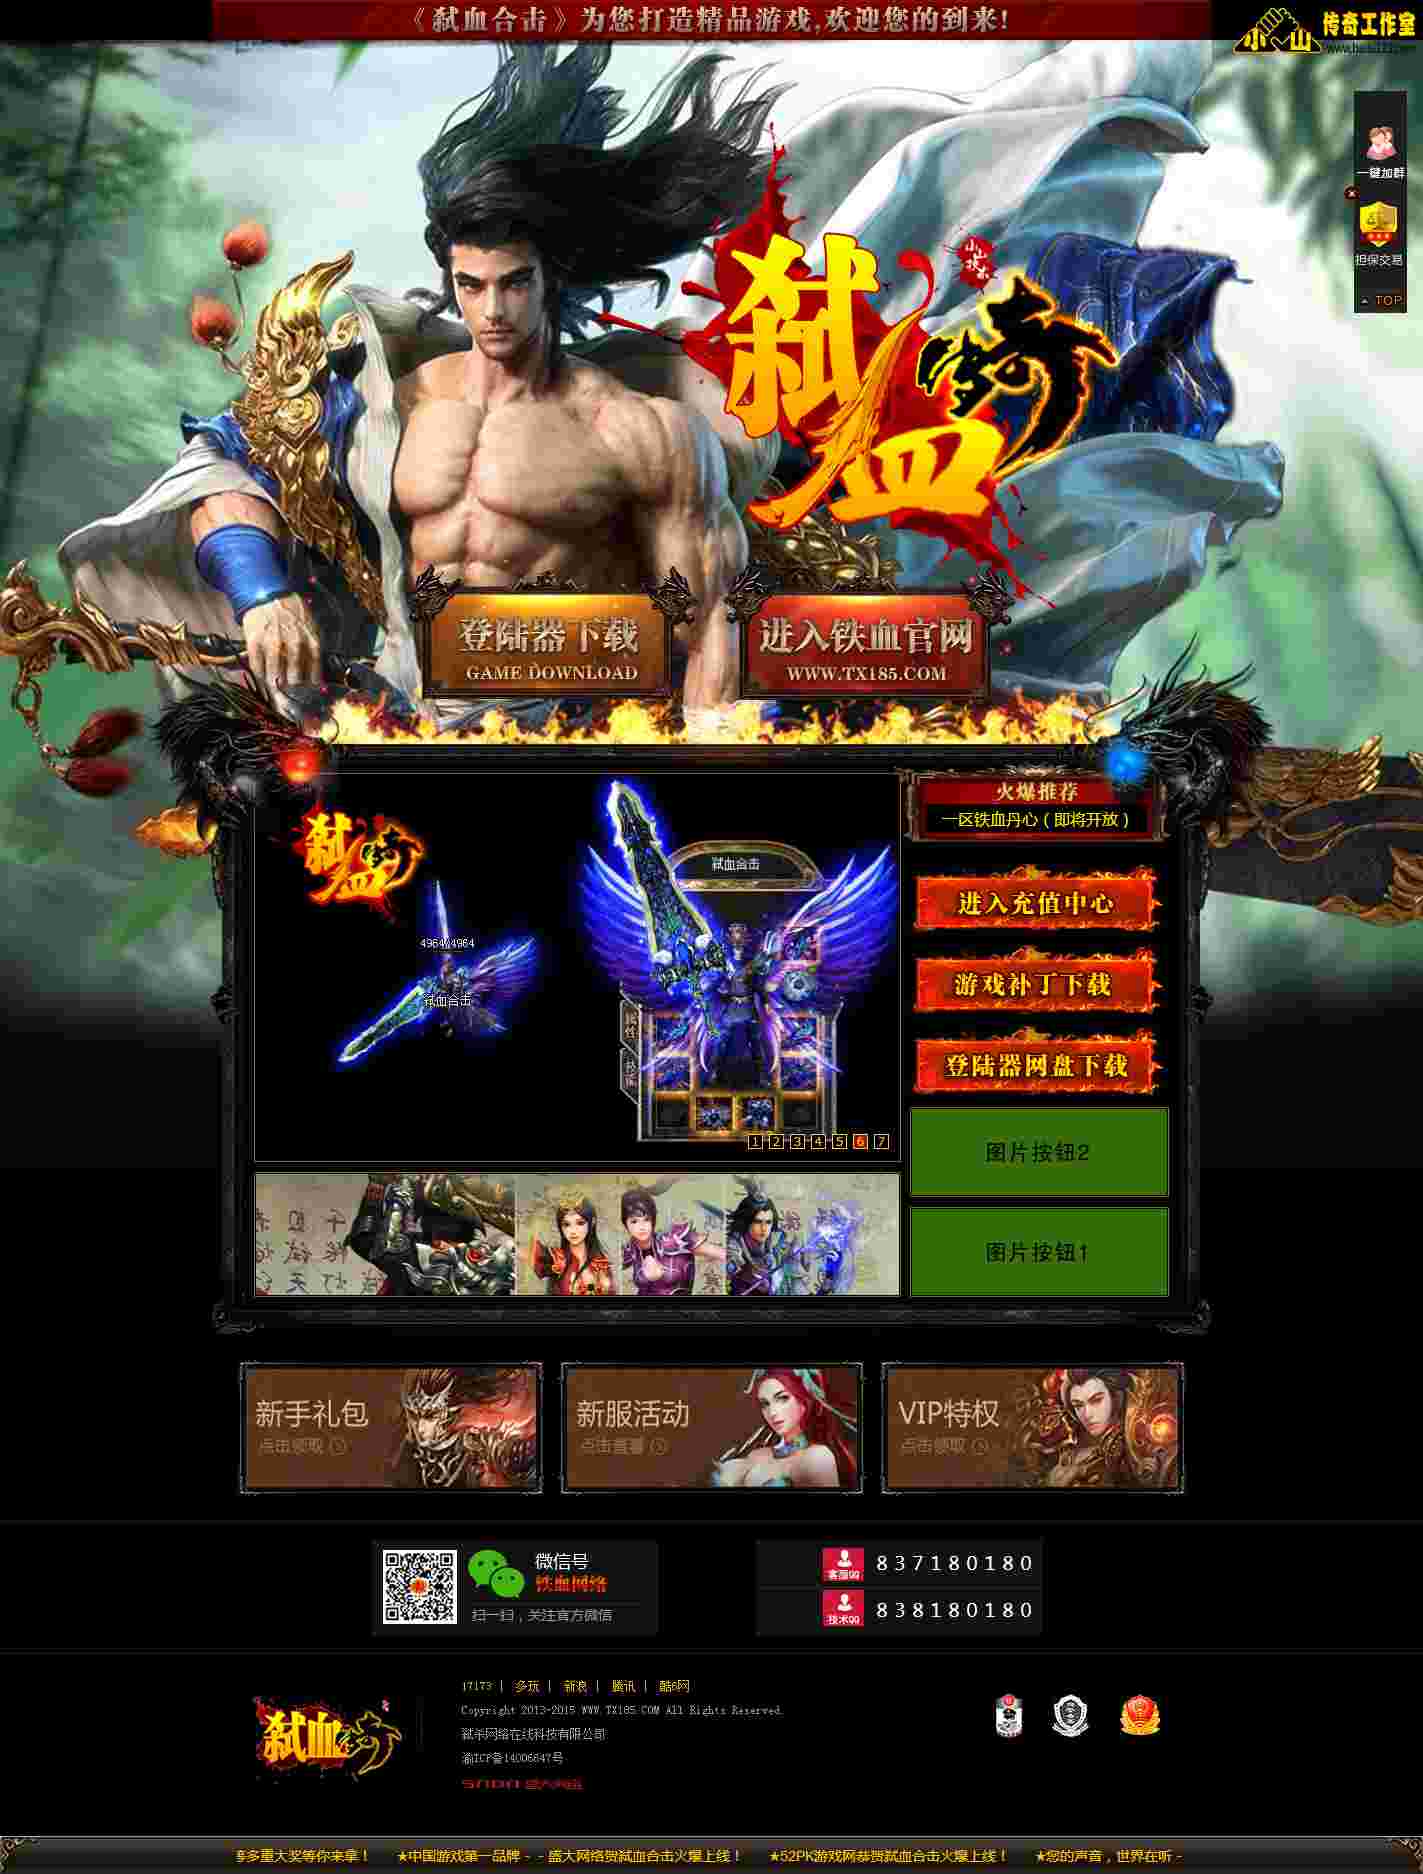 中变传奇网站，中国最受欢迎的传奇游戏平台-中变传奇，安全可靠、免费畅玩,经典游戏平台